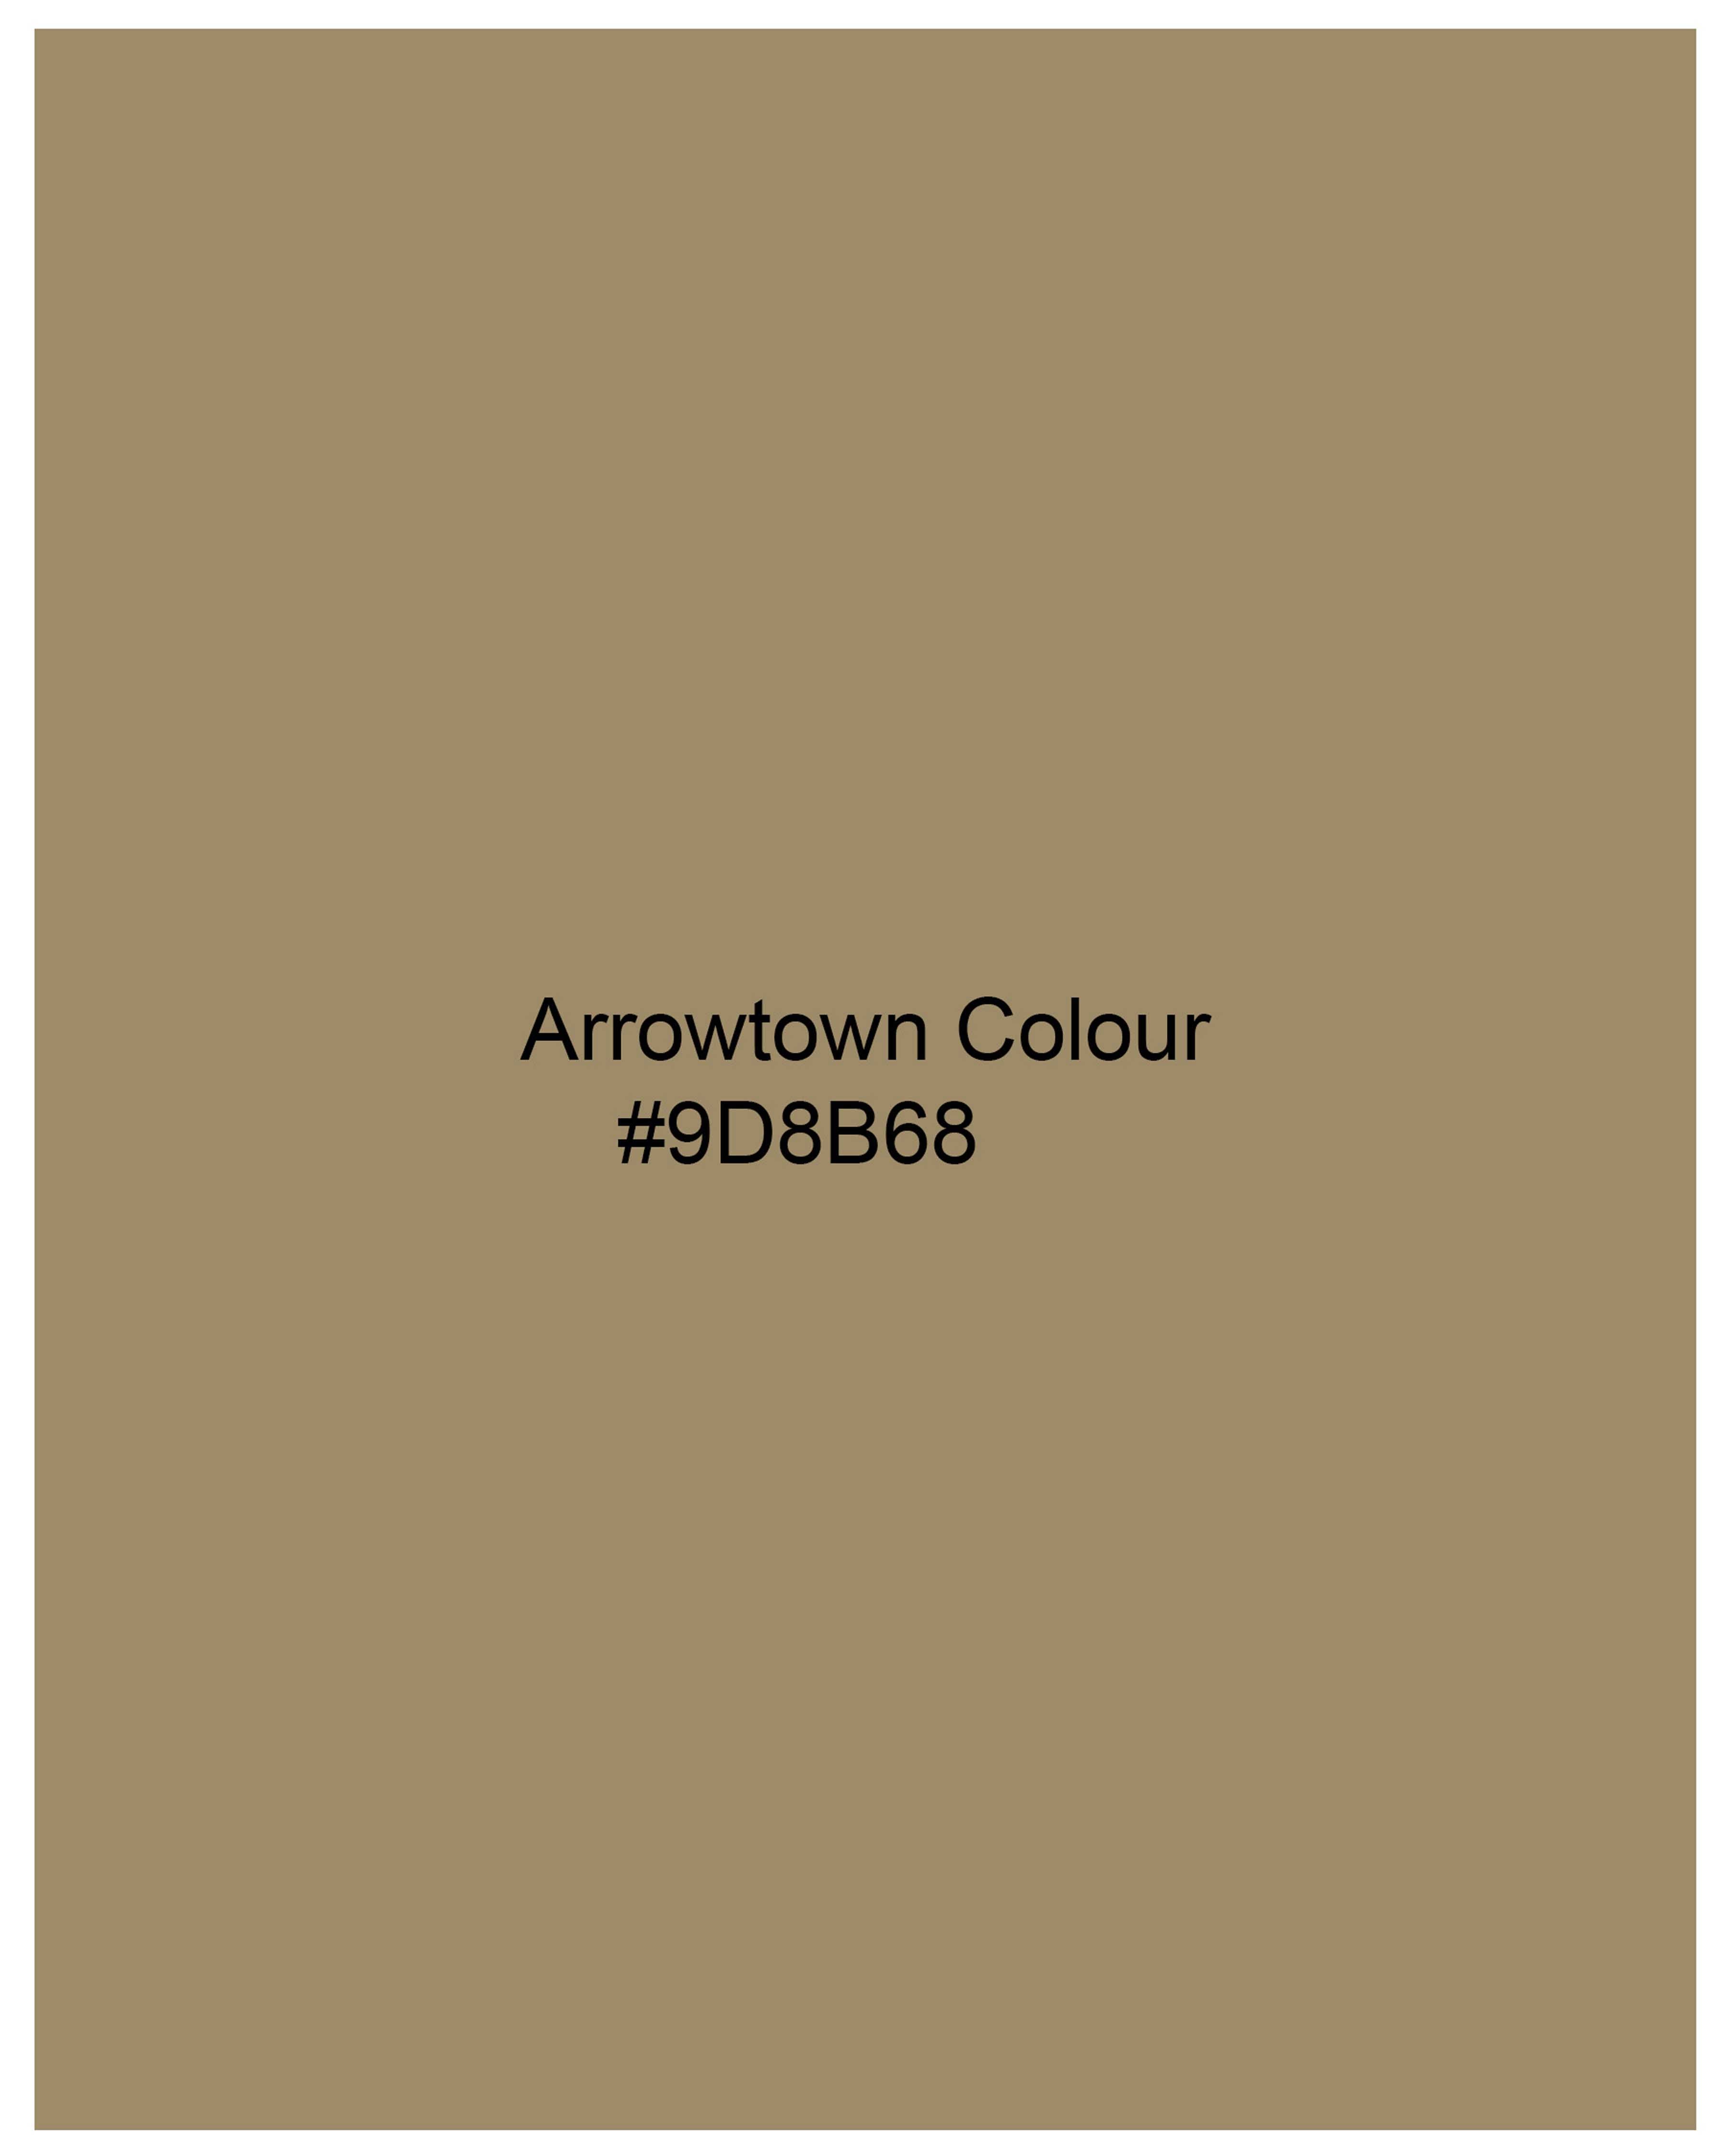 Arrowtown Brown Pure Wool Waistcoat V2066-36, V2066-38, V2066-40, V2066-42, V2066-44, V2066-46, V2066-48, V2066-50, V2066-52, V2066-54, V2066-56, V2066-58, V2066-60